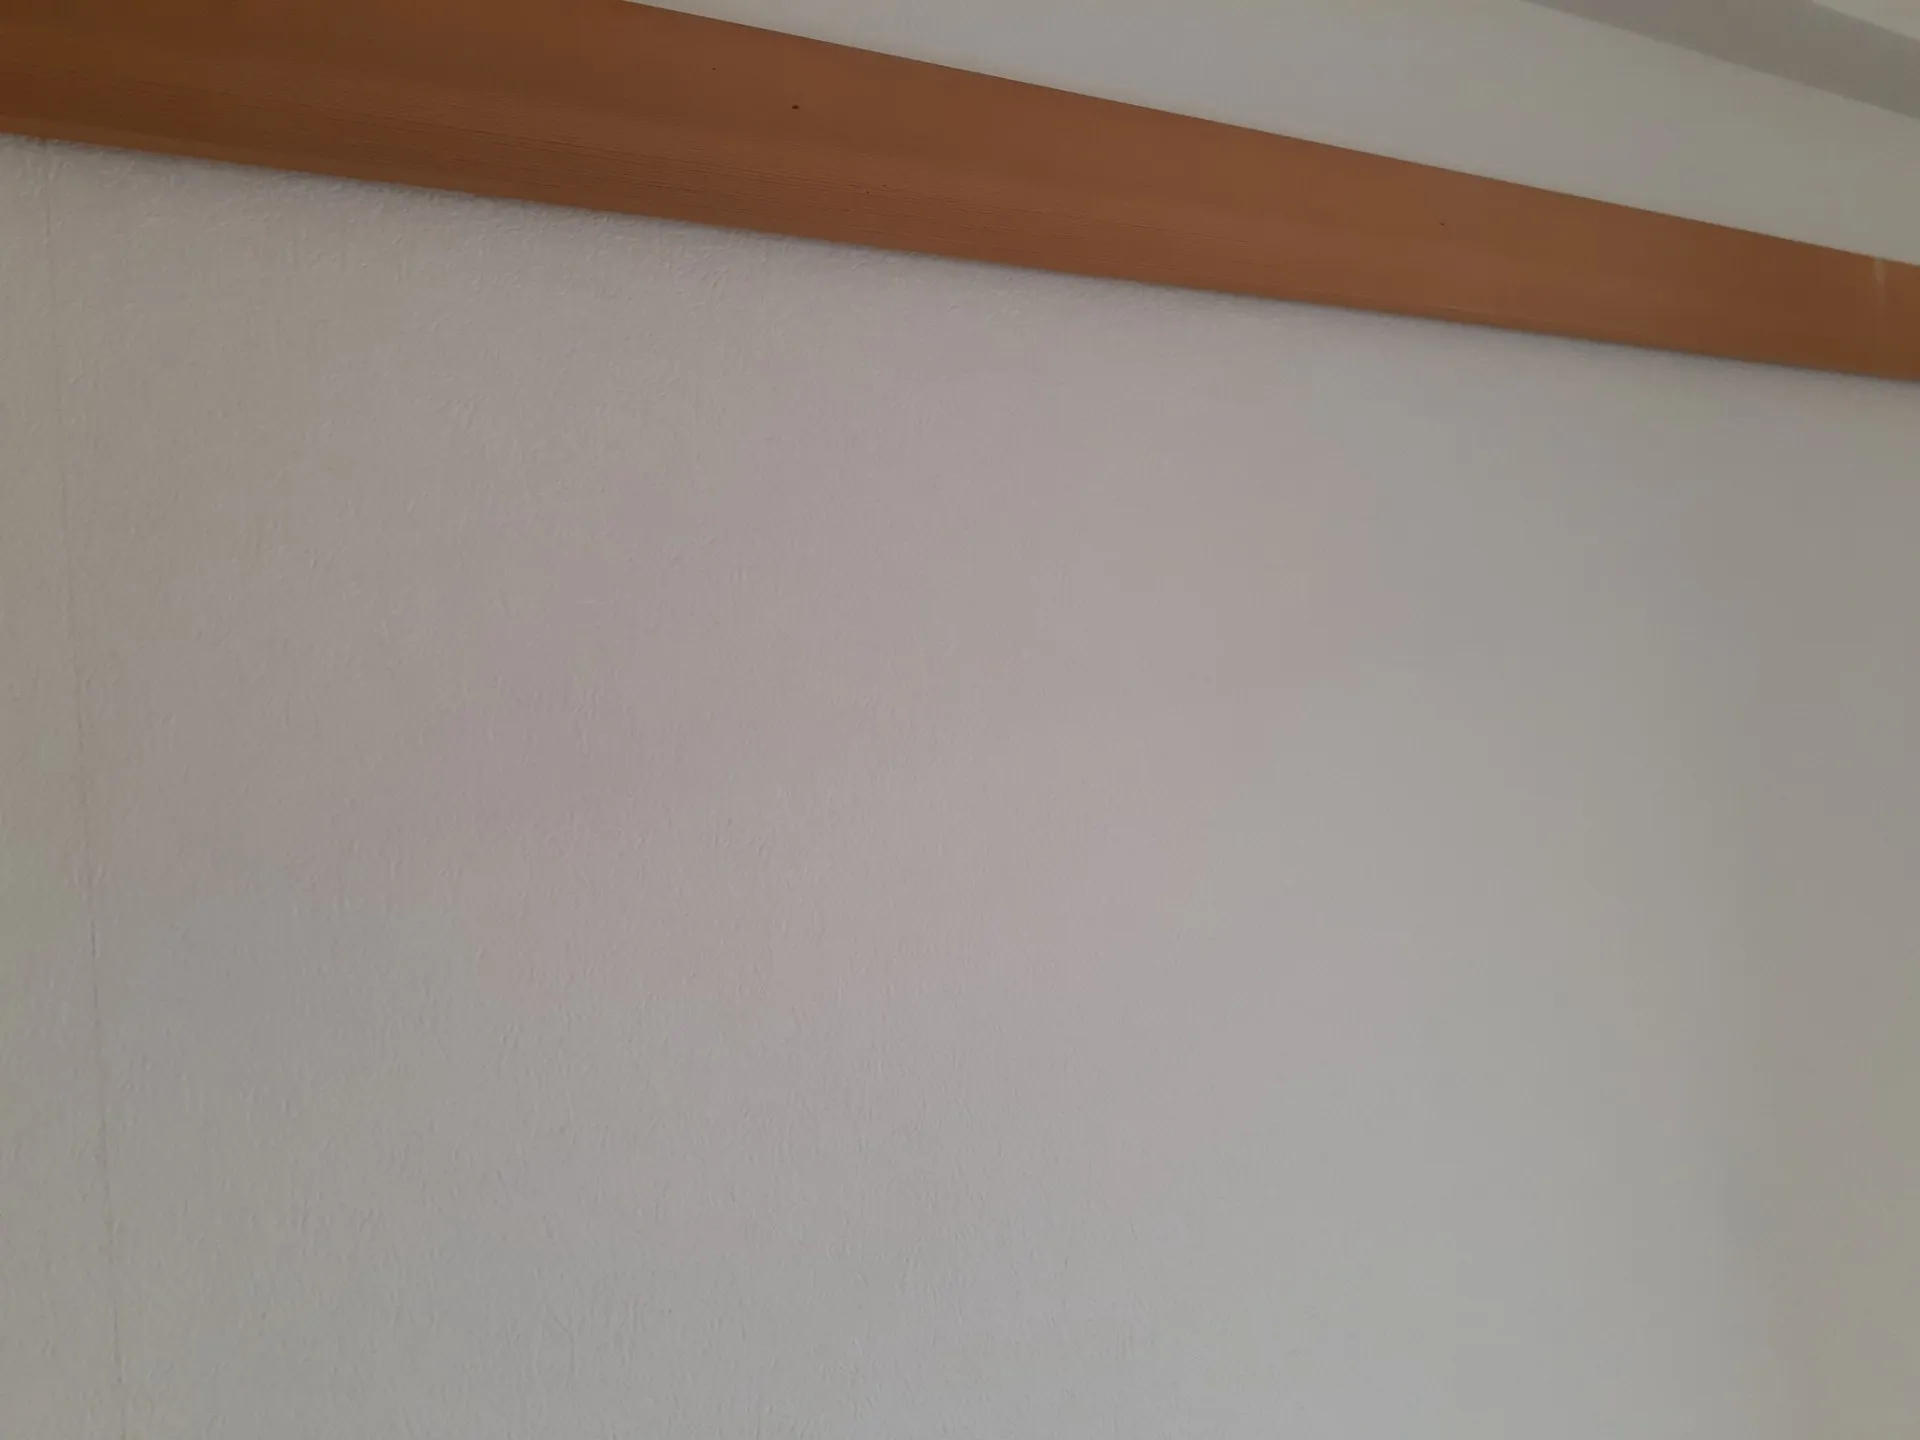 大阪府のマンション壁紙施工終わりました。